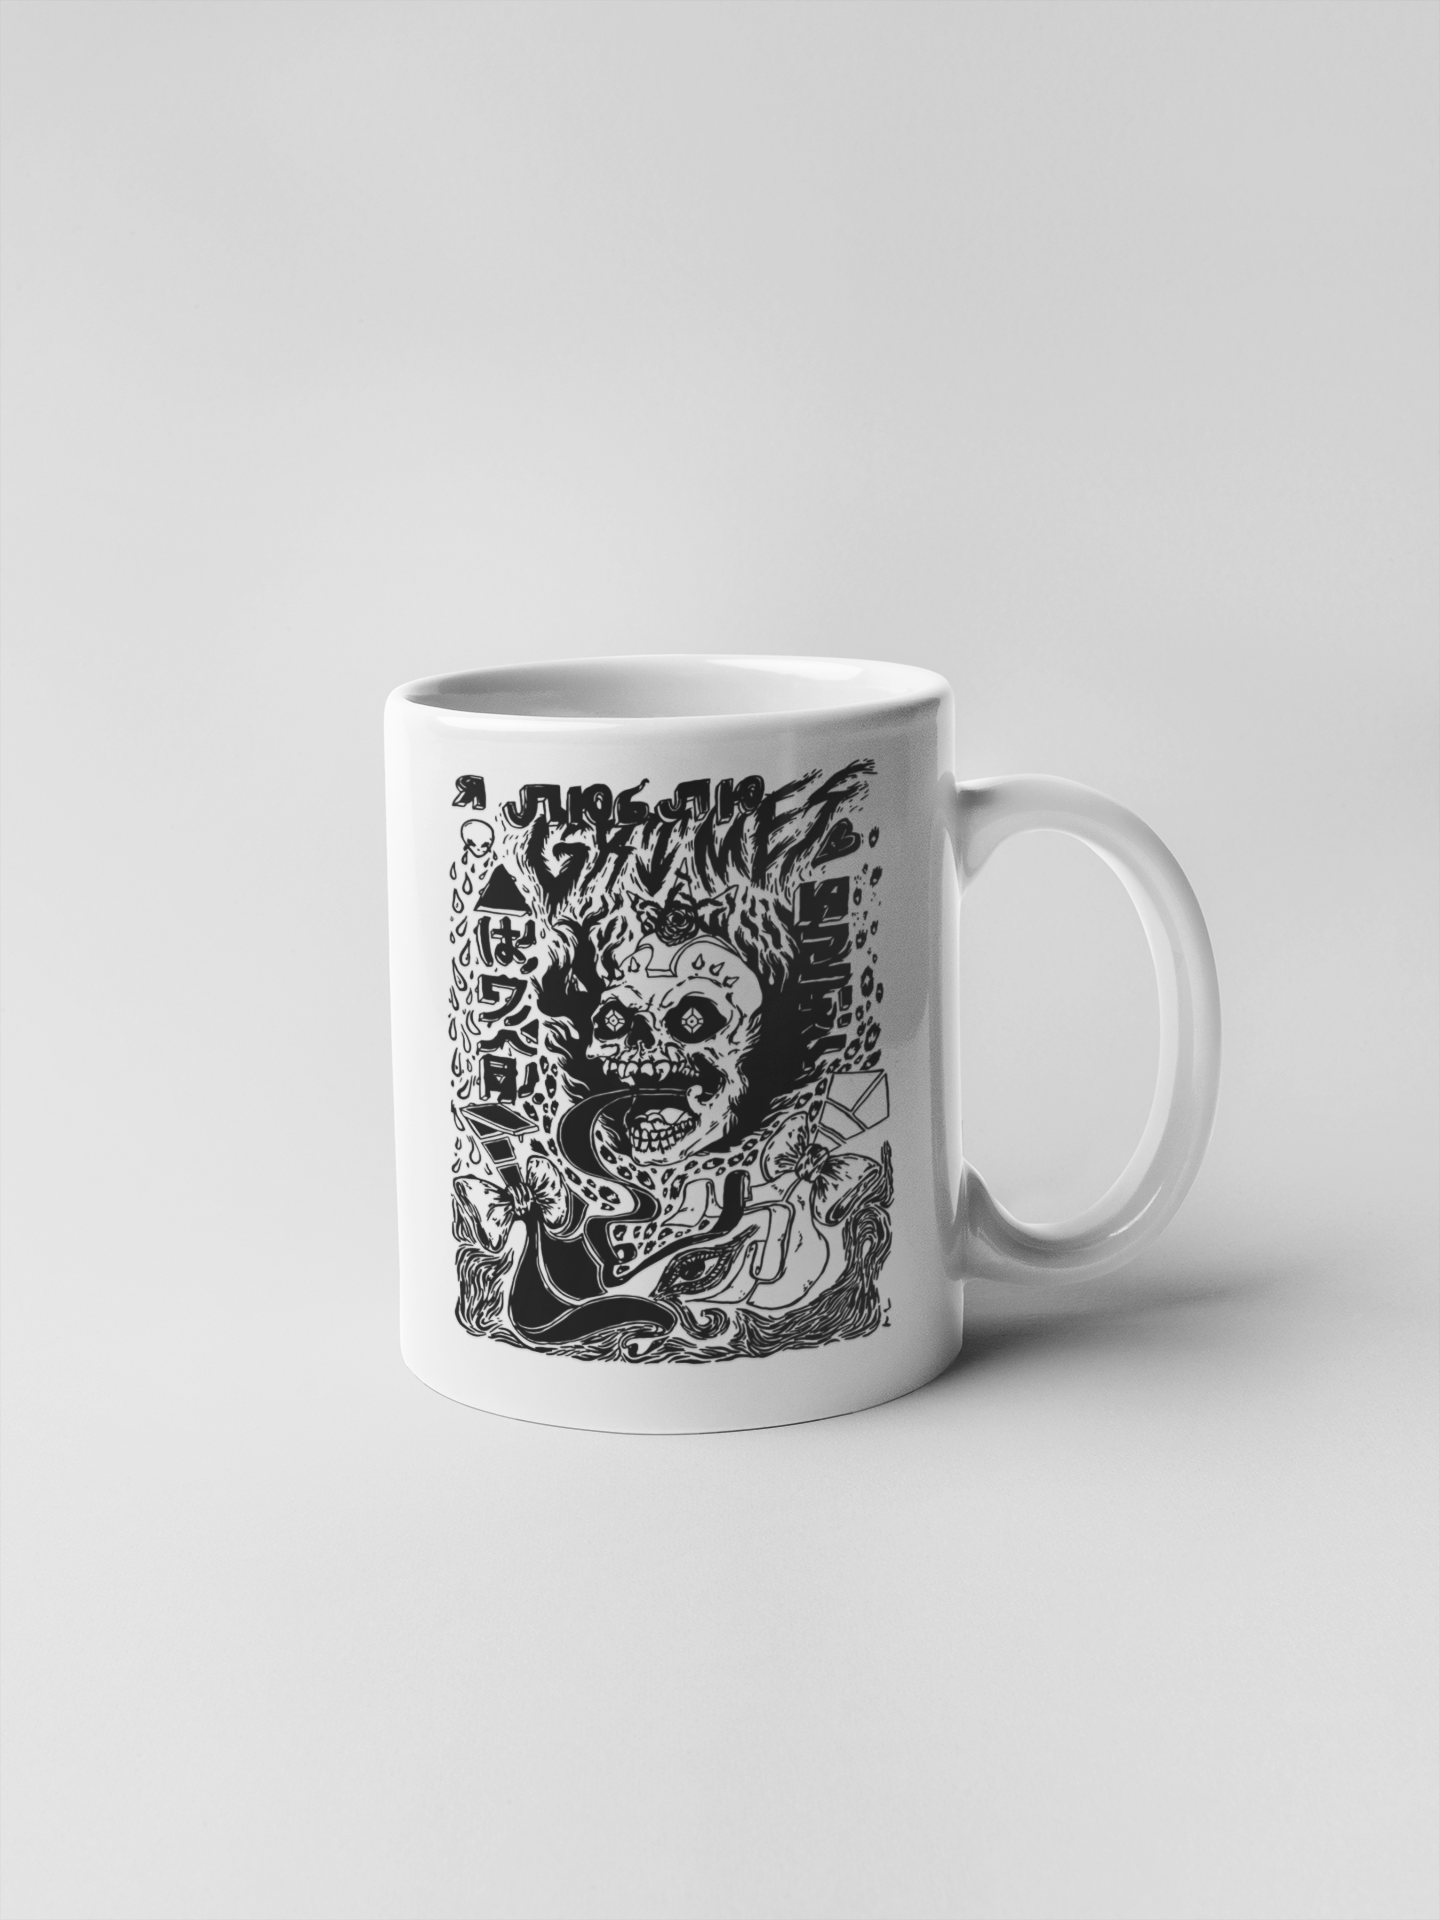 Grimes Visions Album Cover Ceramic Coffee Mugs